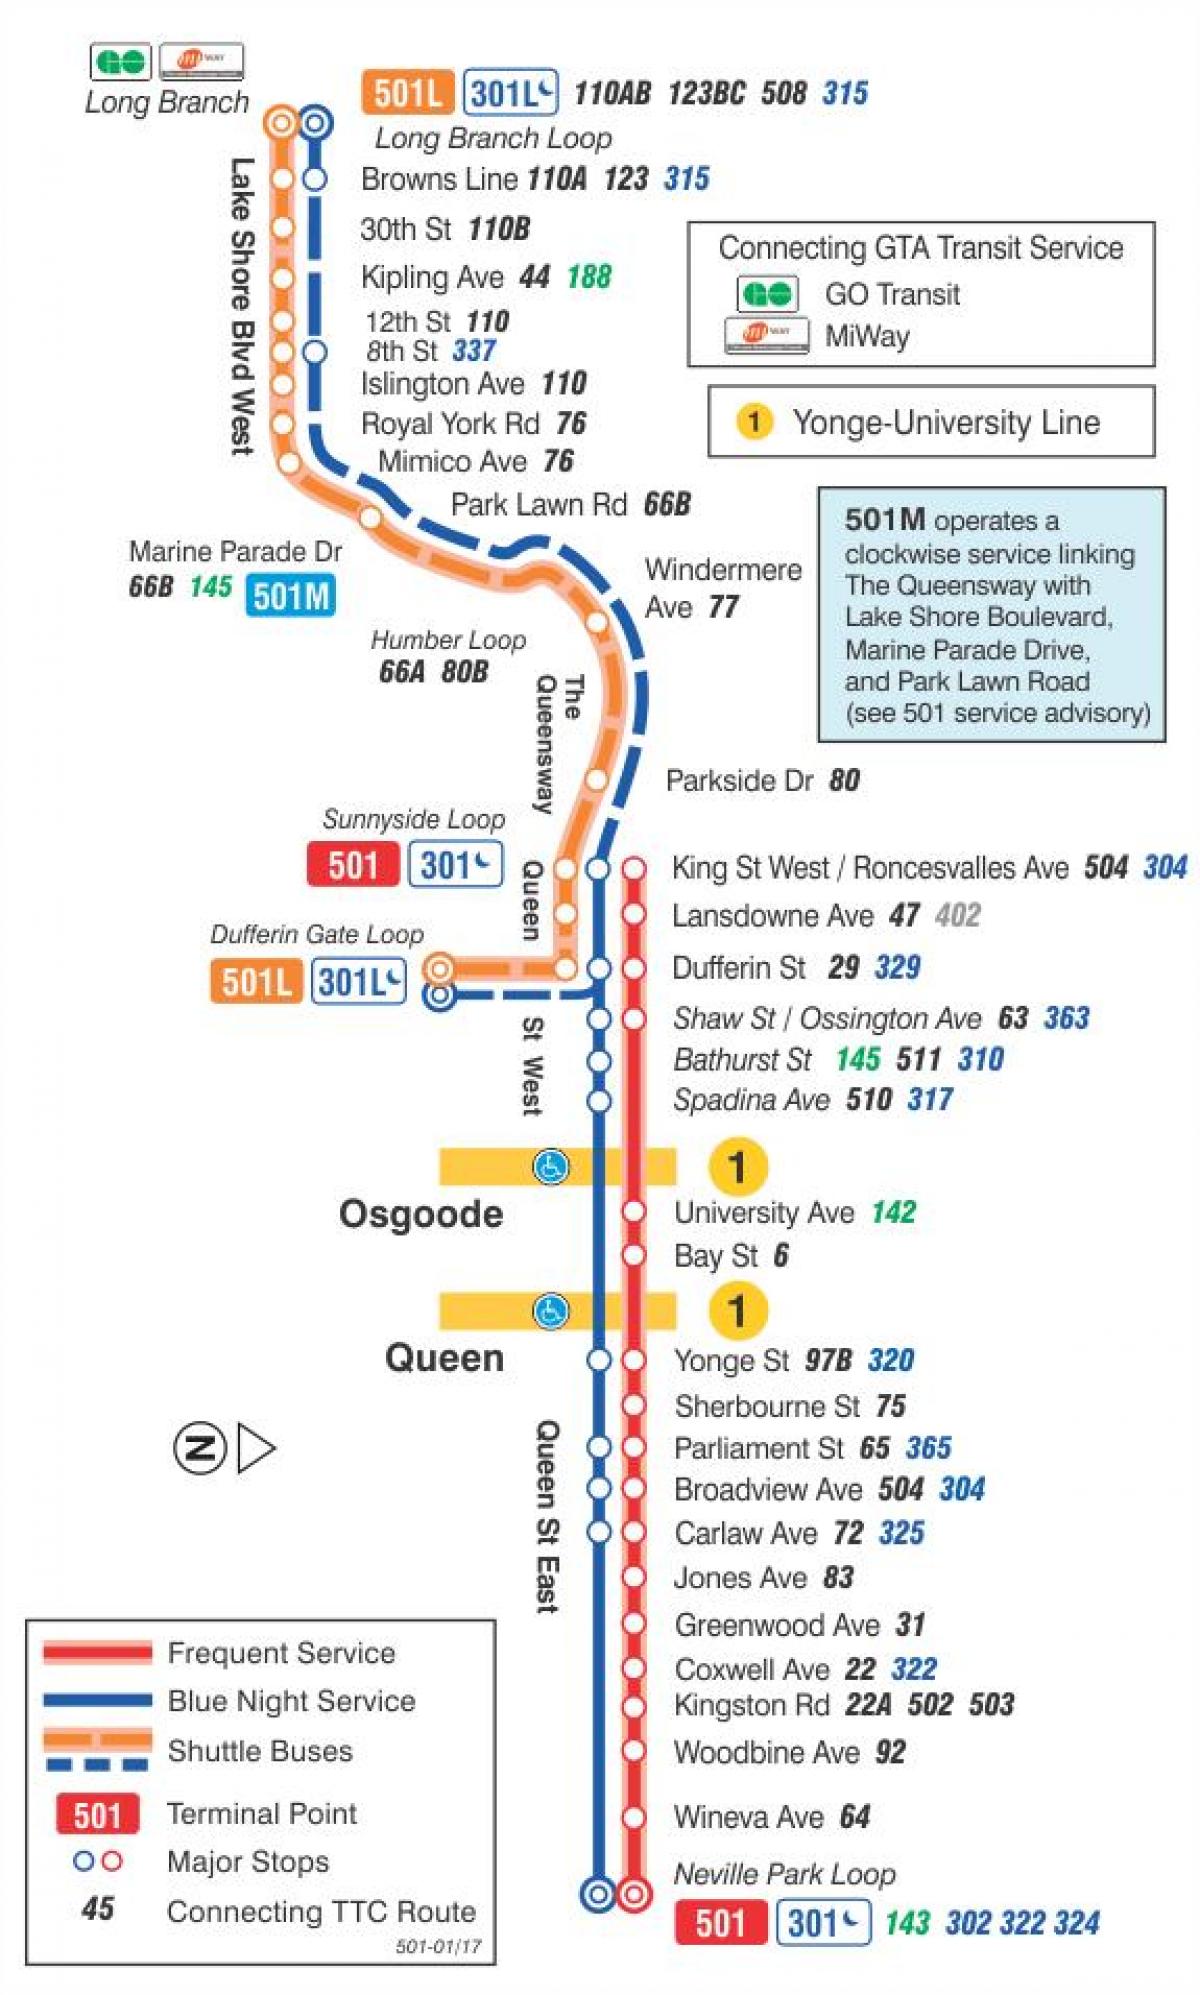 რუკა streetcar line 501 დედოფალი